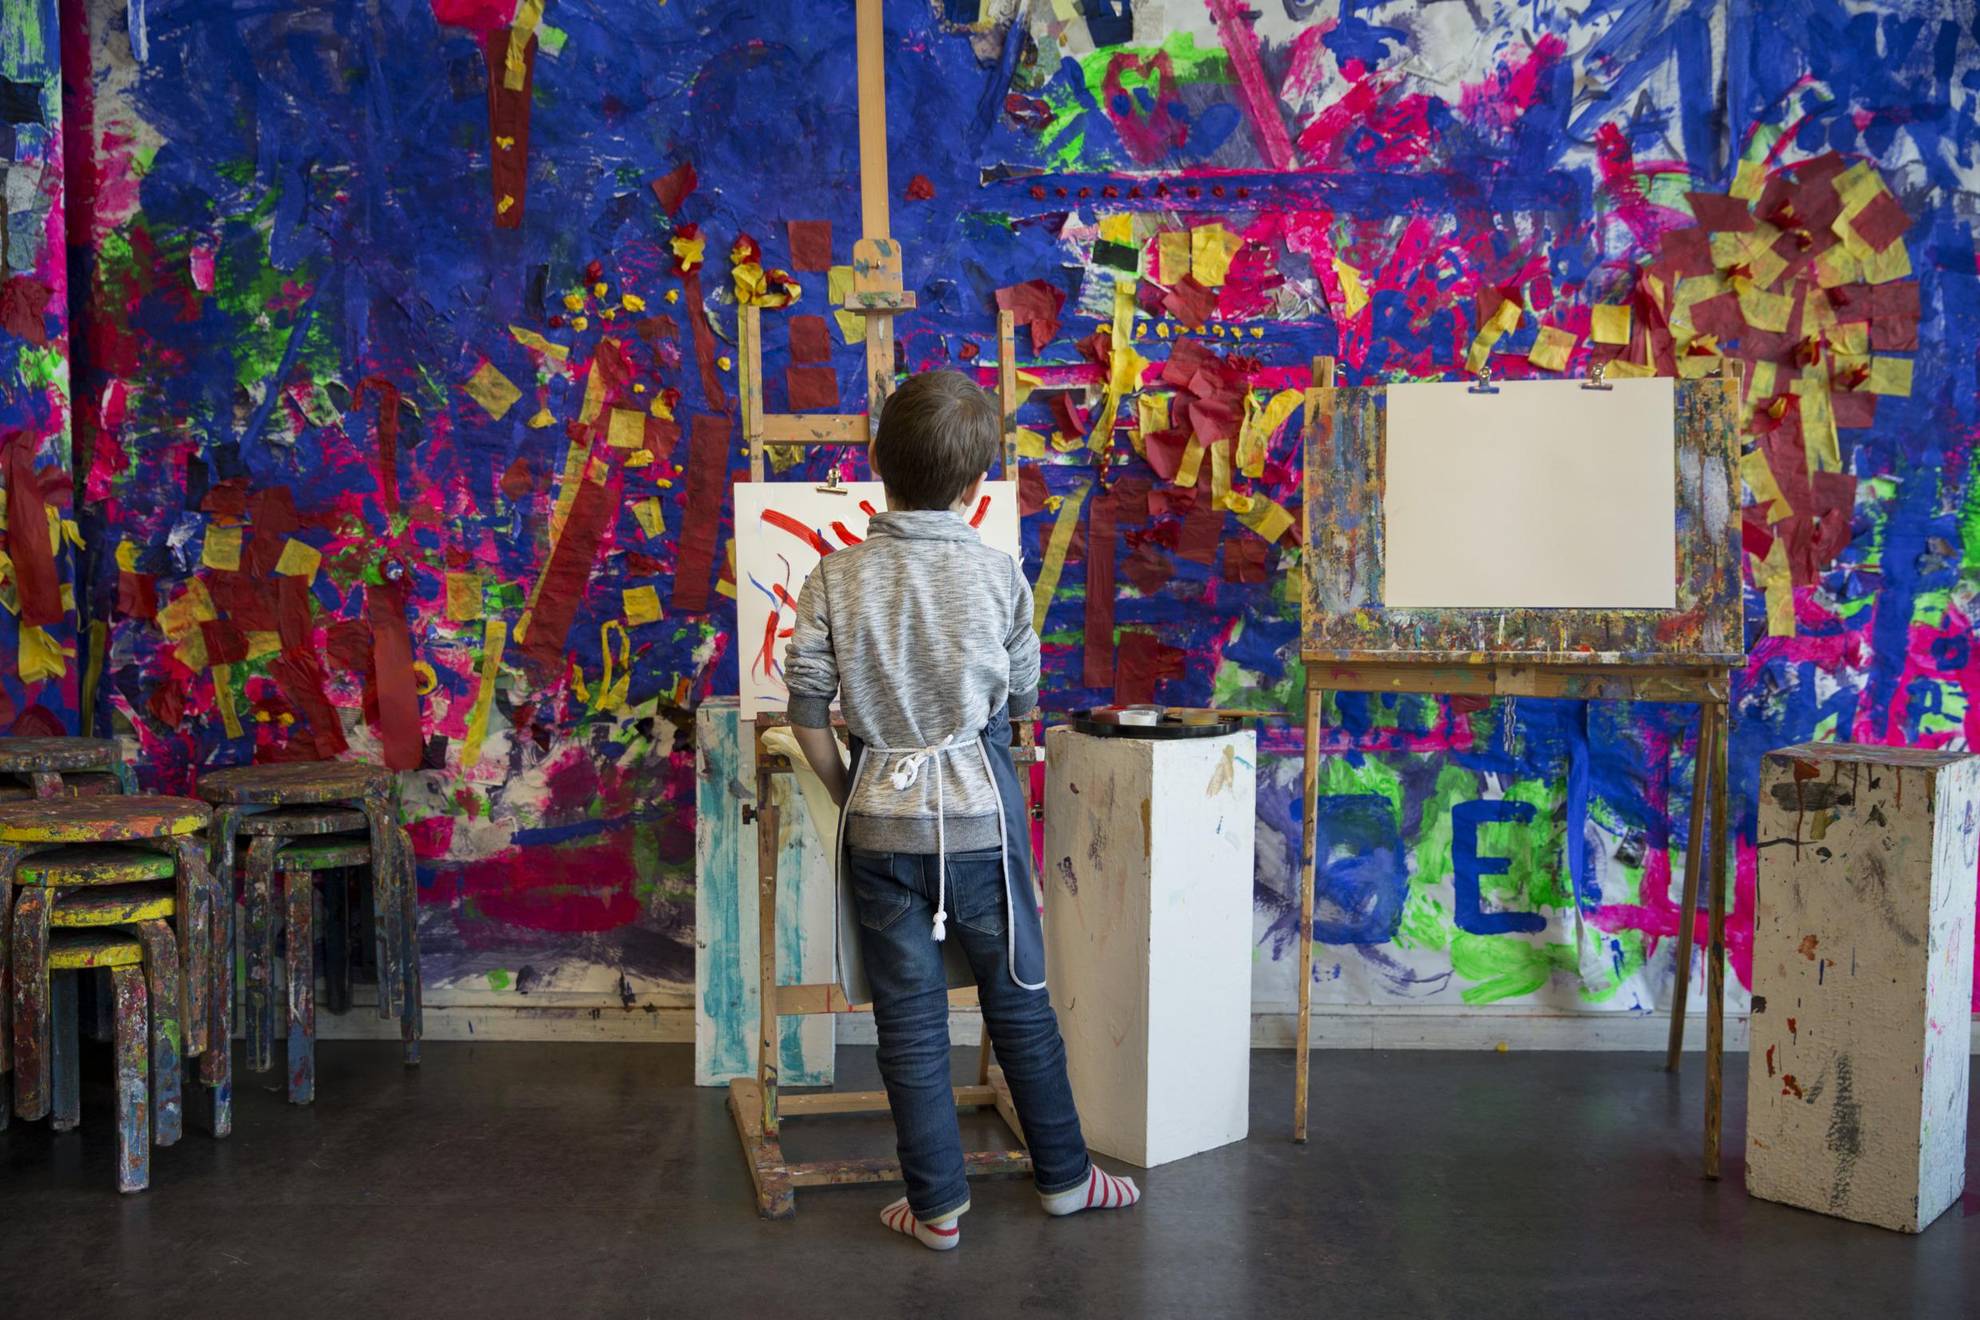 In Room for Children is een jongen aan het schilderen op een doek dat op een ezel is opgesteld. De achtergrondmuren en stoelen zijn bedekt met verf.